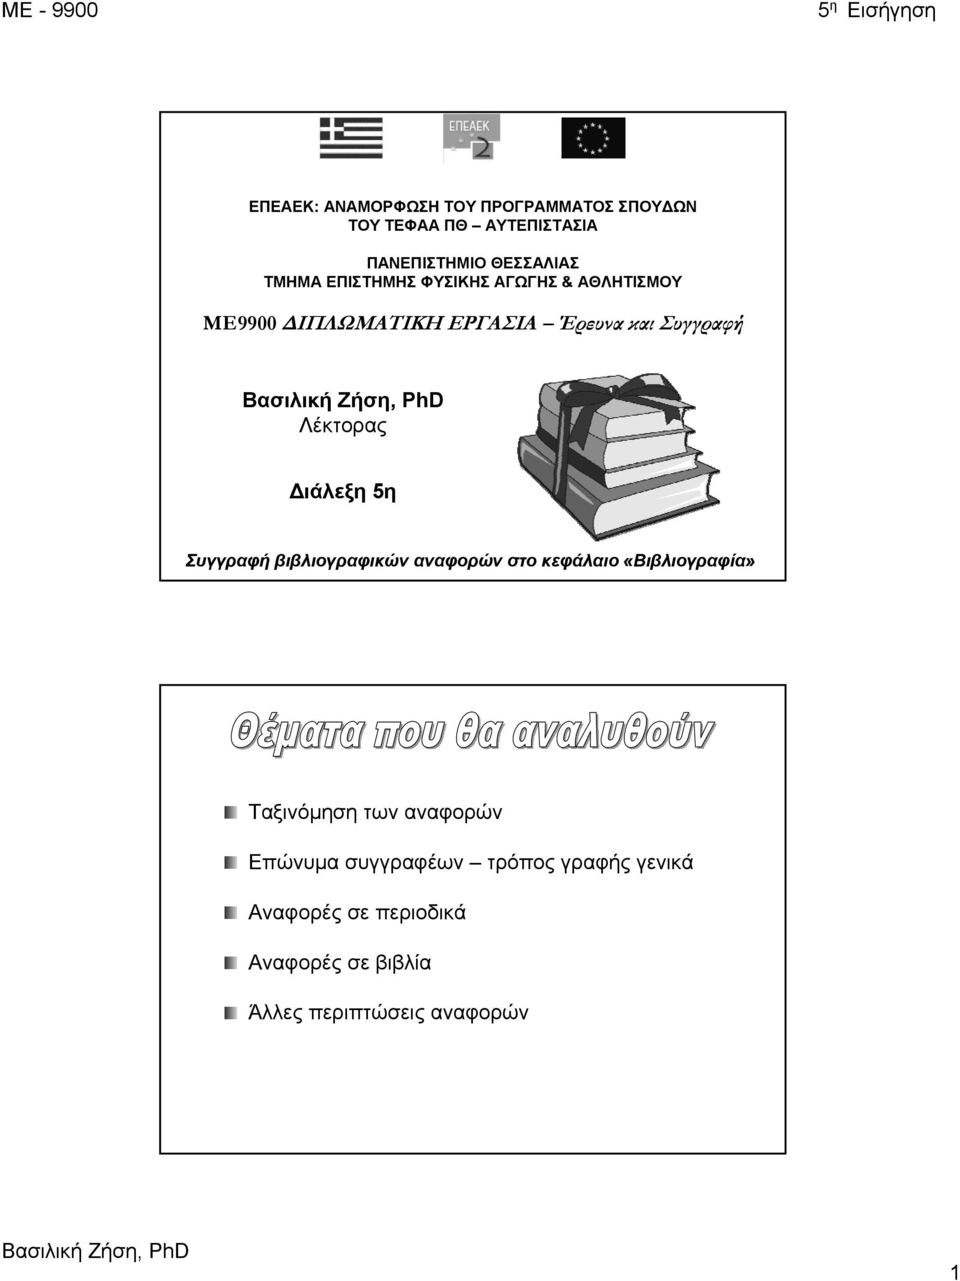 Διάλεξη 5η Συγγραφή βιβλιογραφικών αναφορών στο κεφάλαιο «Βιβλιογραφία» Ταξινόμηση των αναφορών